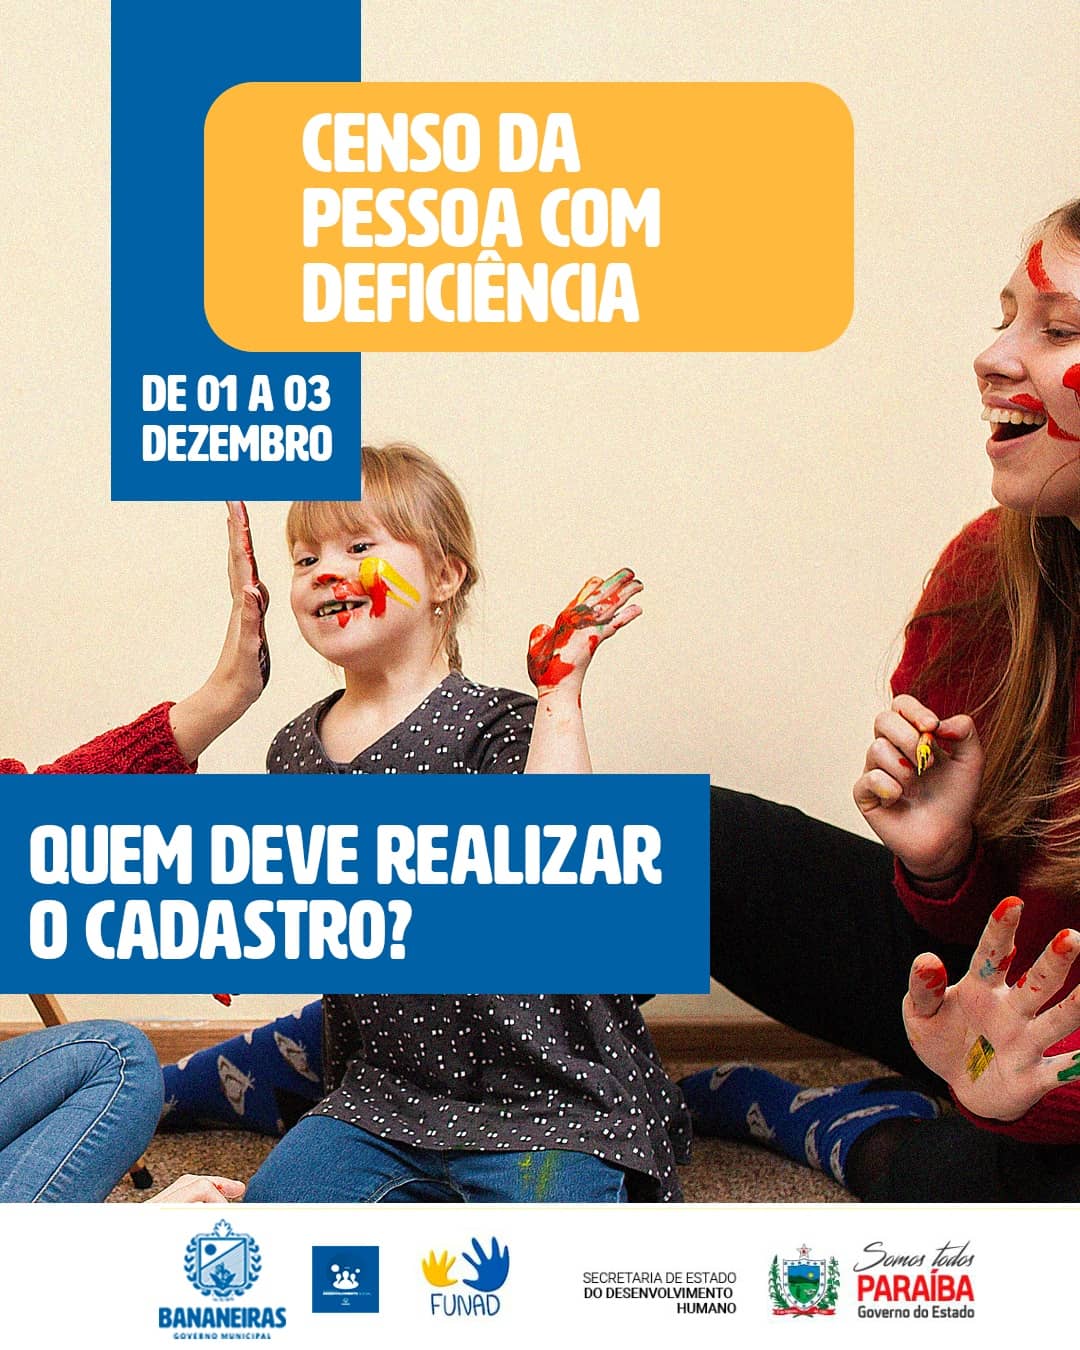 Município de Bananeiras realizará o Censo da Pessoa com Deficiência, a partir da próxima quarta-feira